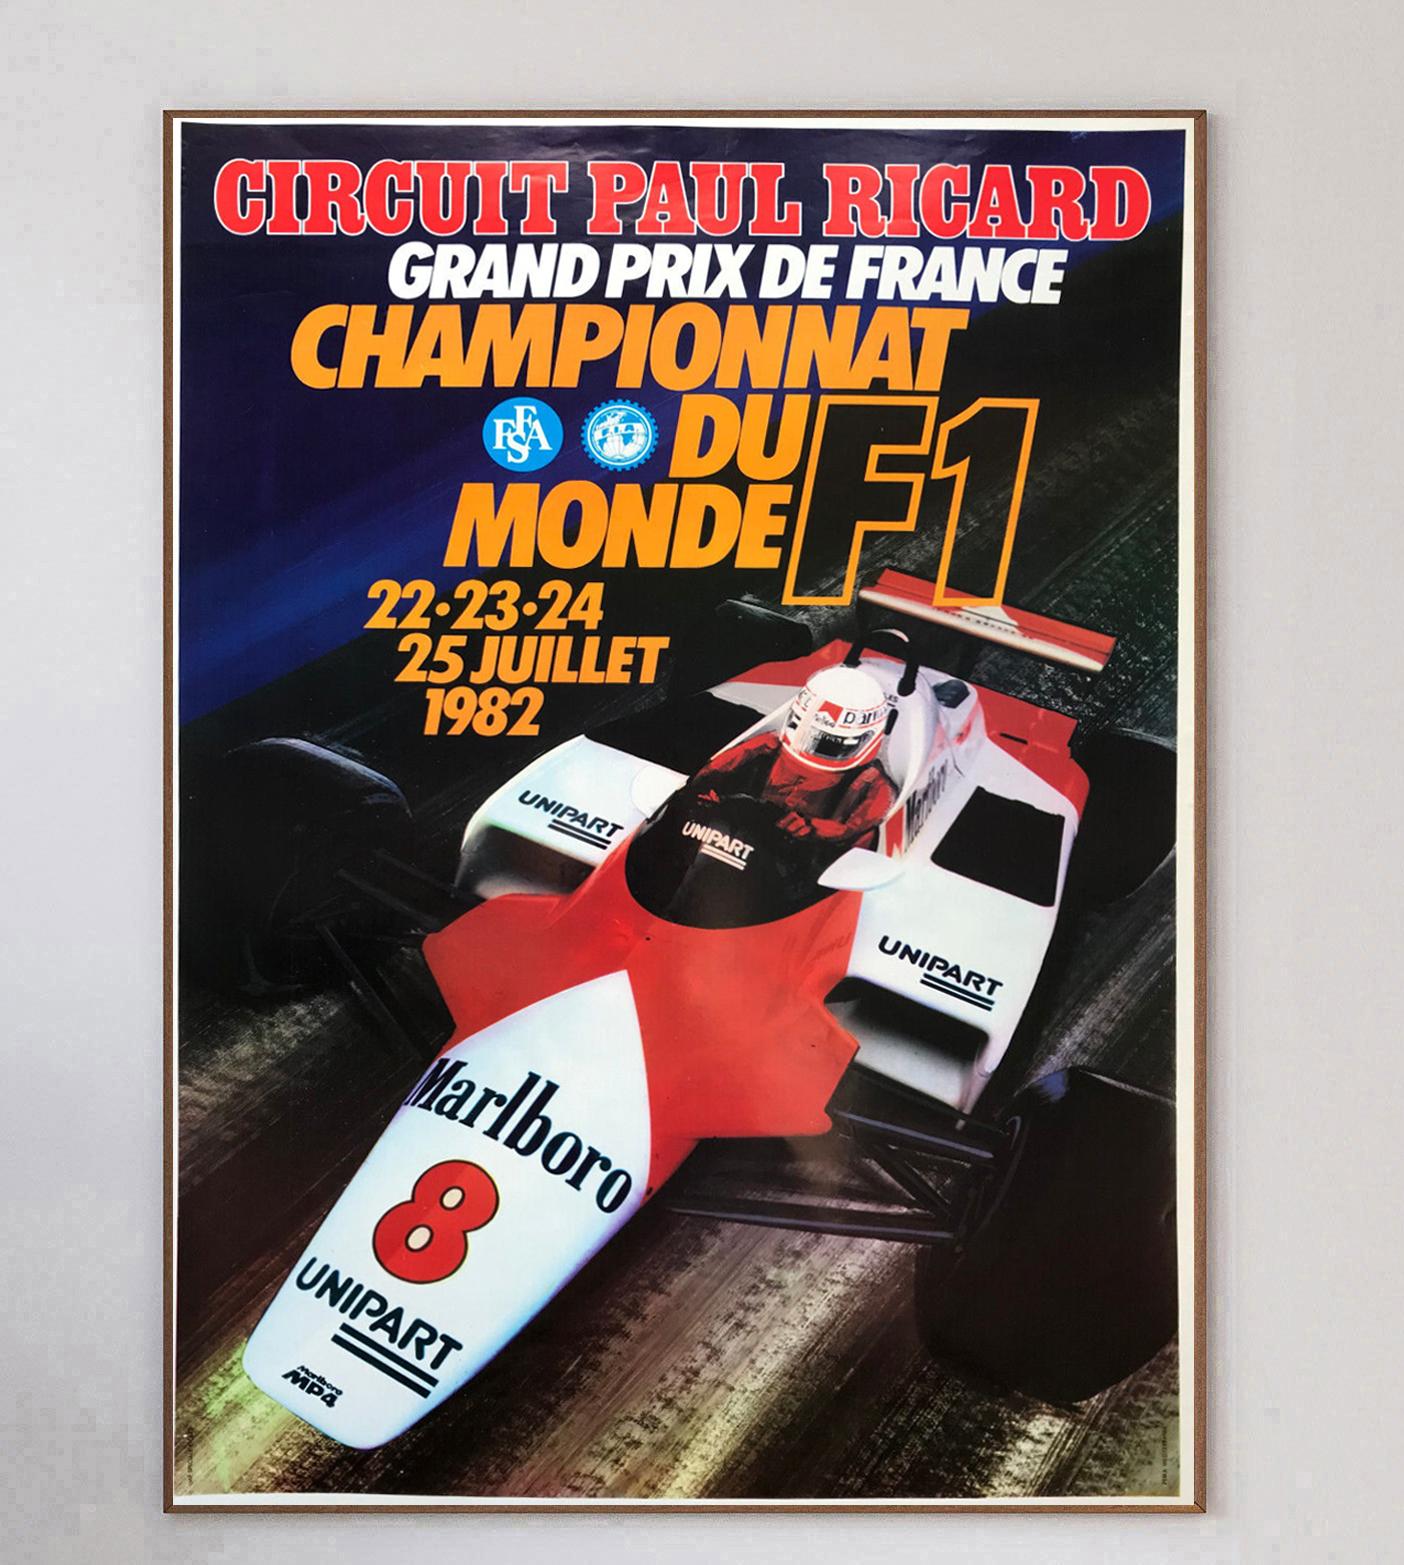 Cette affiche est celle du Grand Prix de France de Formule 1 1982, qui s'est déroulé sur le circuit Paul Ricard. 

Le magnifique dessin montre le légendaire Niki Lauda au volant de la McLaren, tandis que René Arnoux a remporté la course au volant de